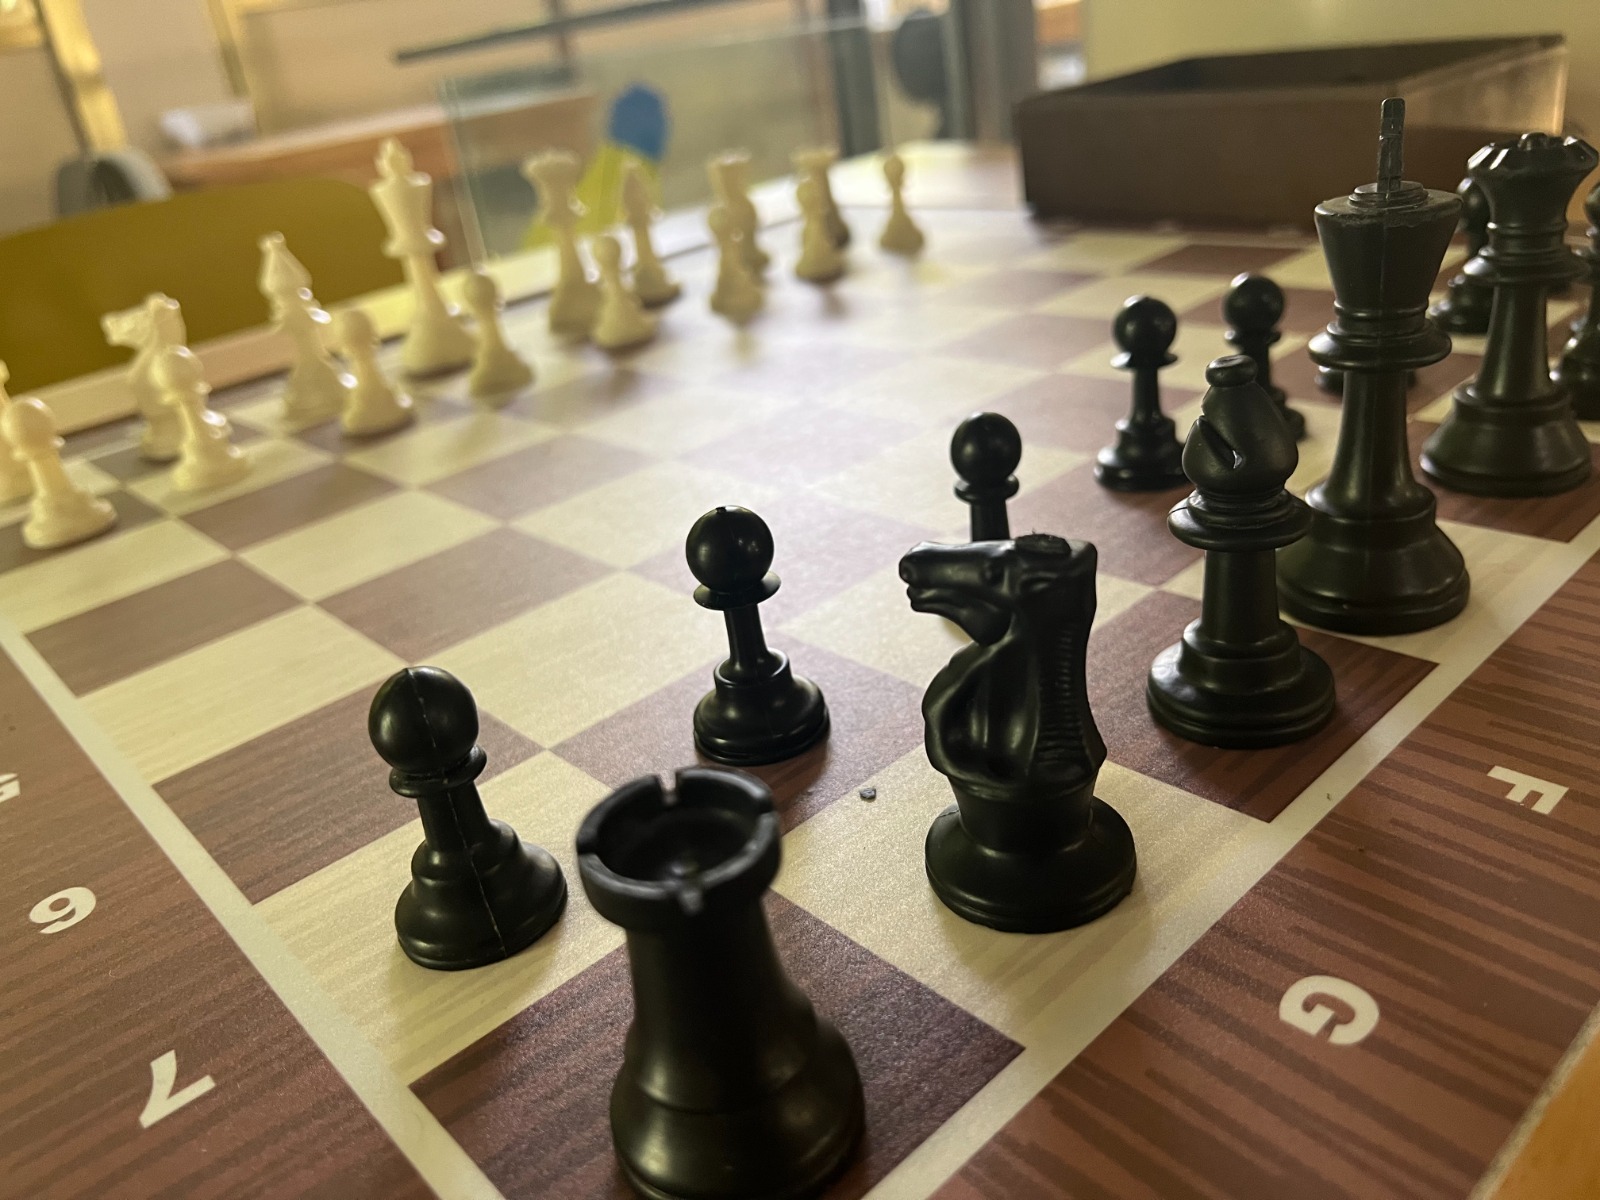 המפונים מקריית שמונה והסביבה יוכלו להשתתף באליפות ישראל בשחמט- ללא תשלום!